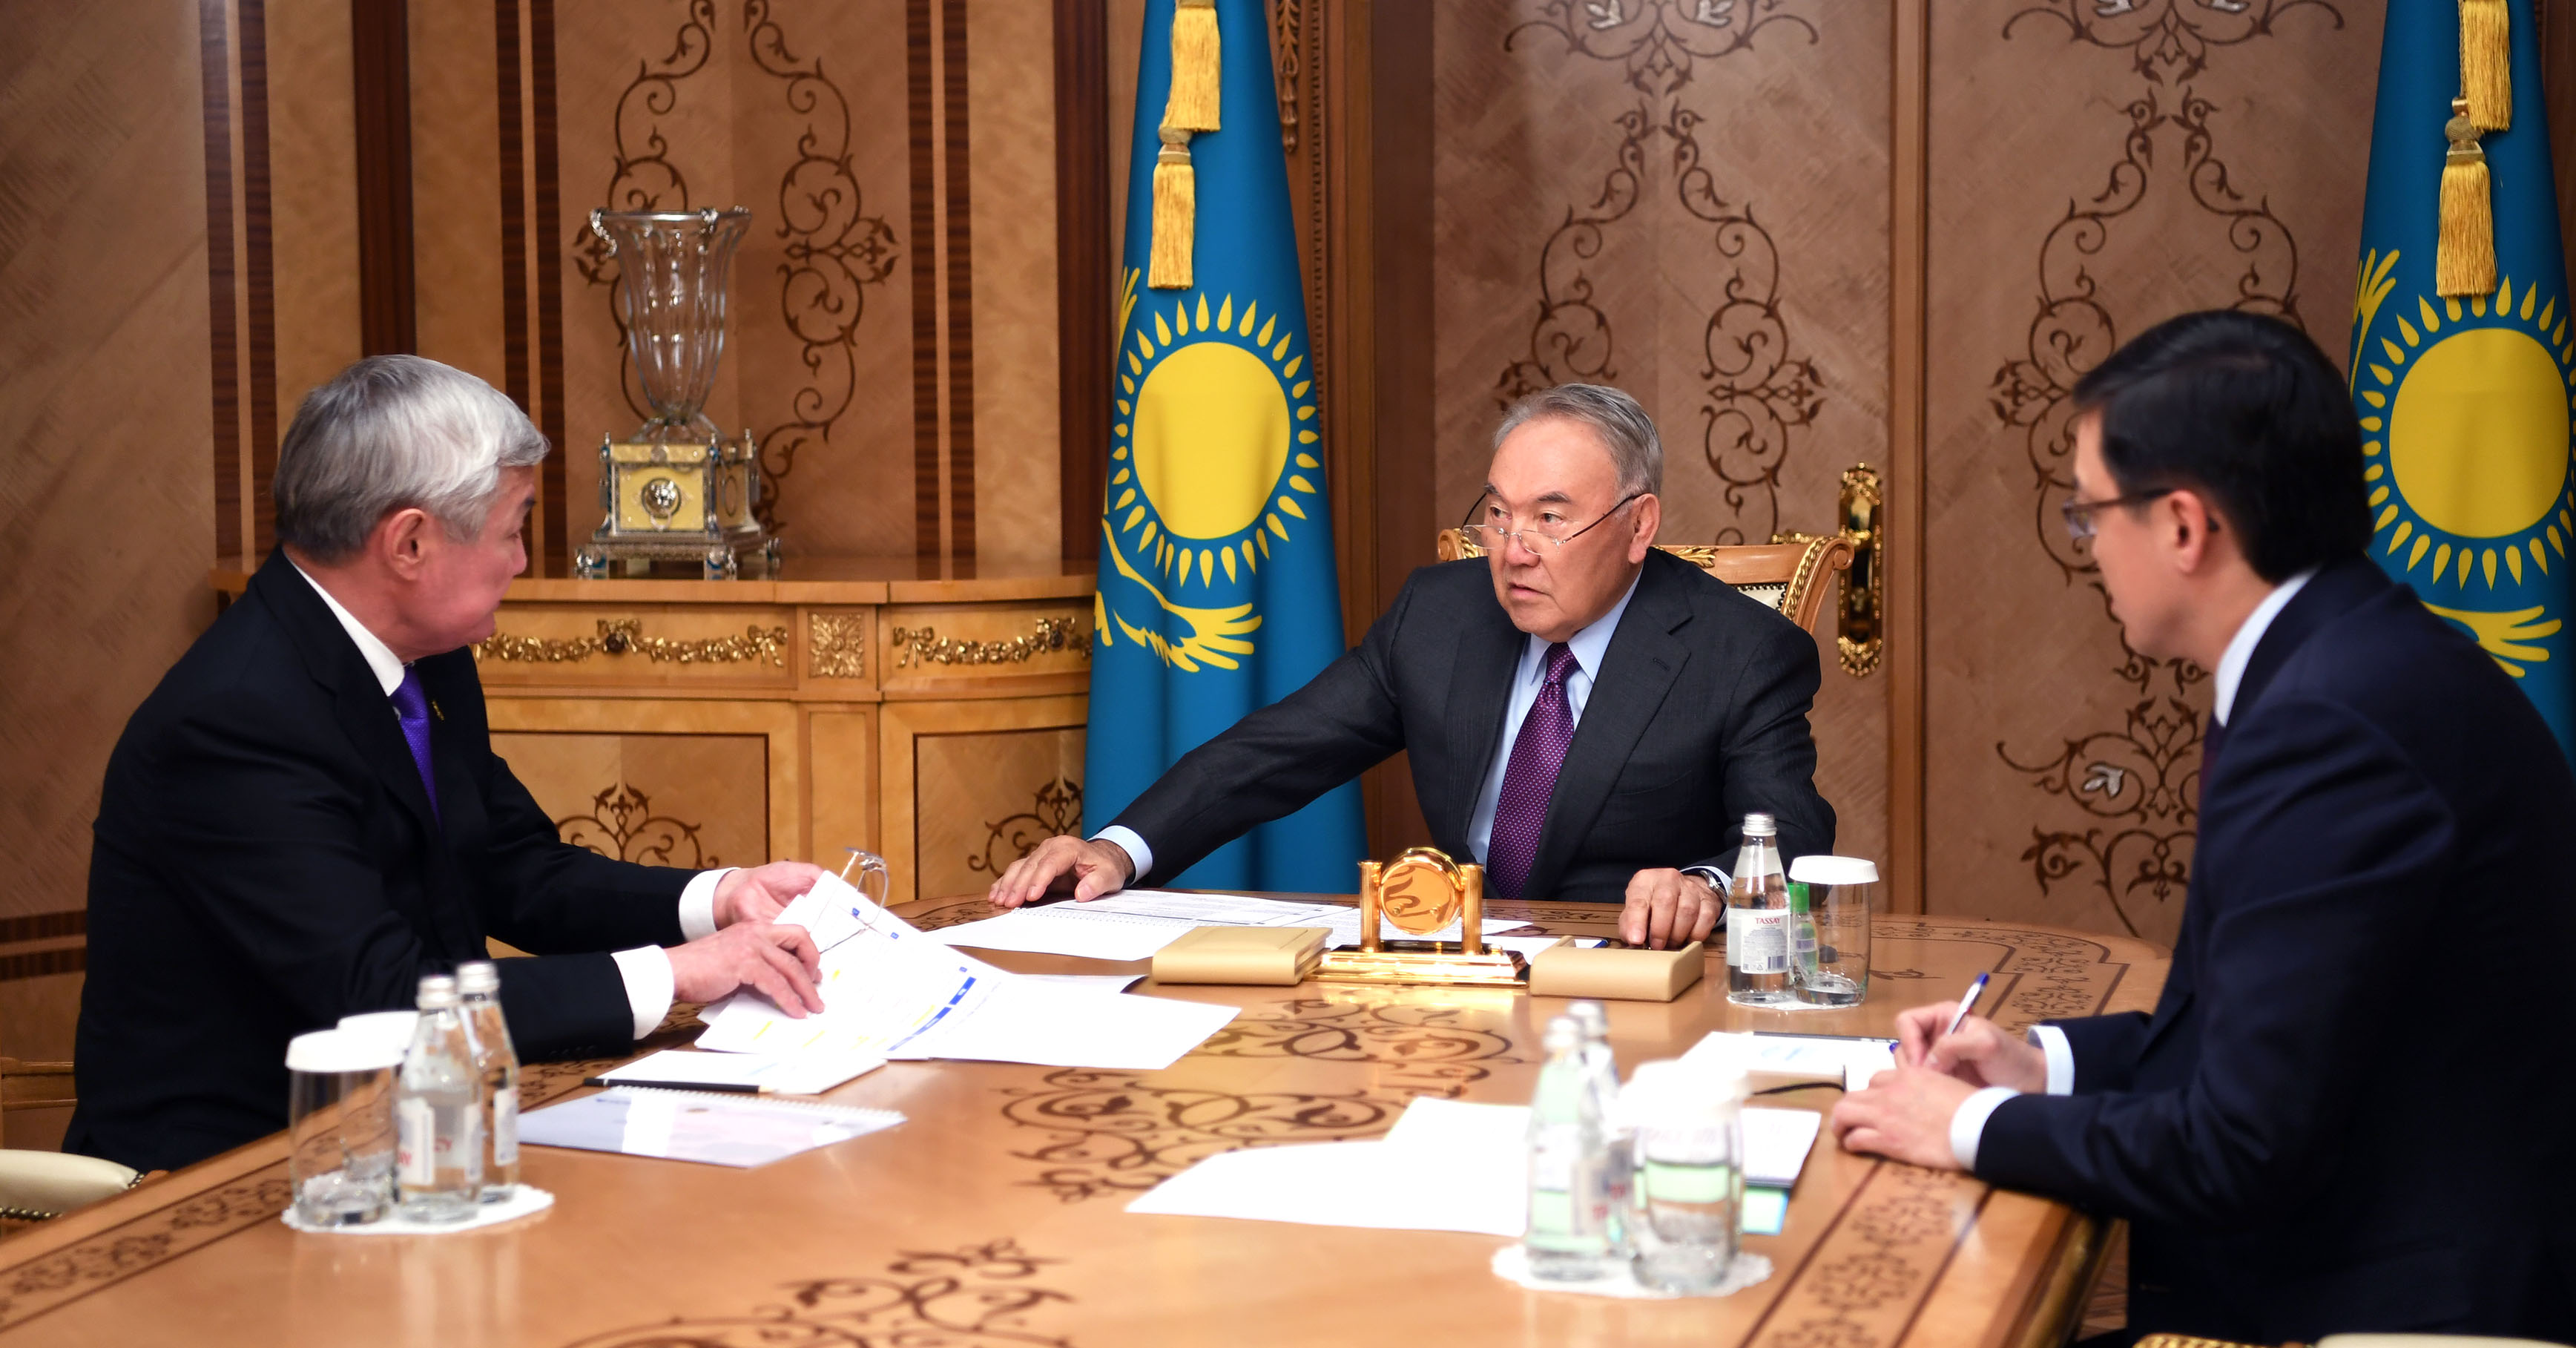 Нурсултан Назарбаев принял министра труда и социальной защиты населения Бердибека Сапарбаева